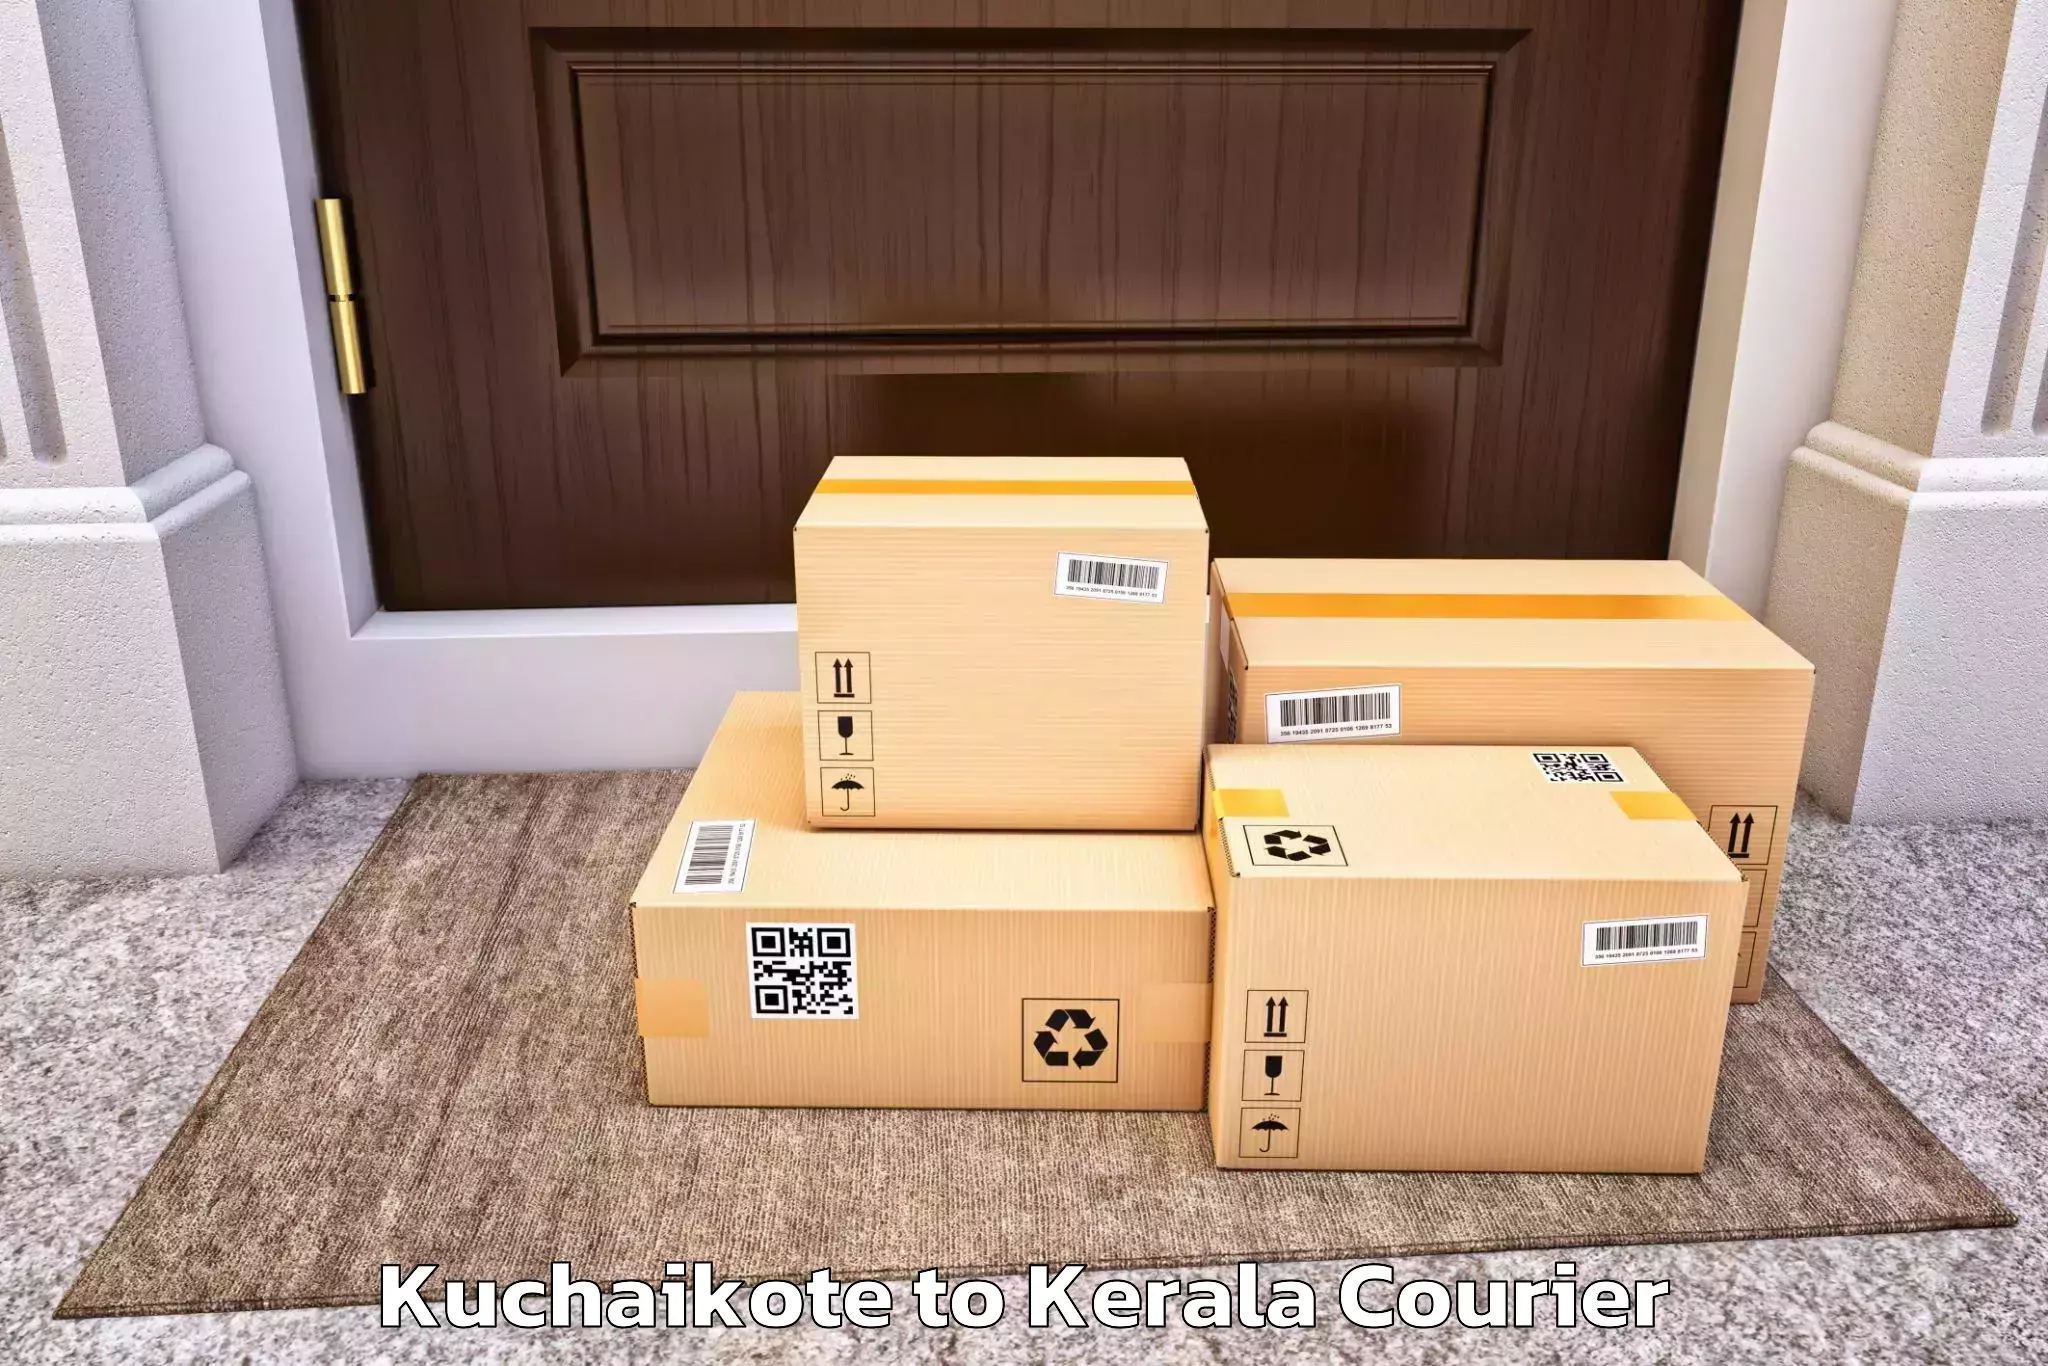 Efficient home relocation Kuchaikote to Kannur